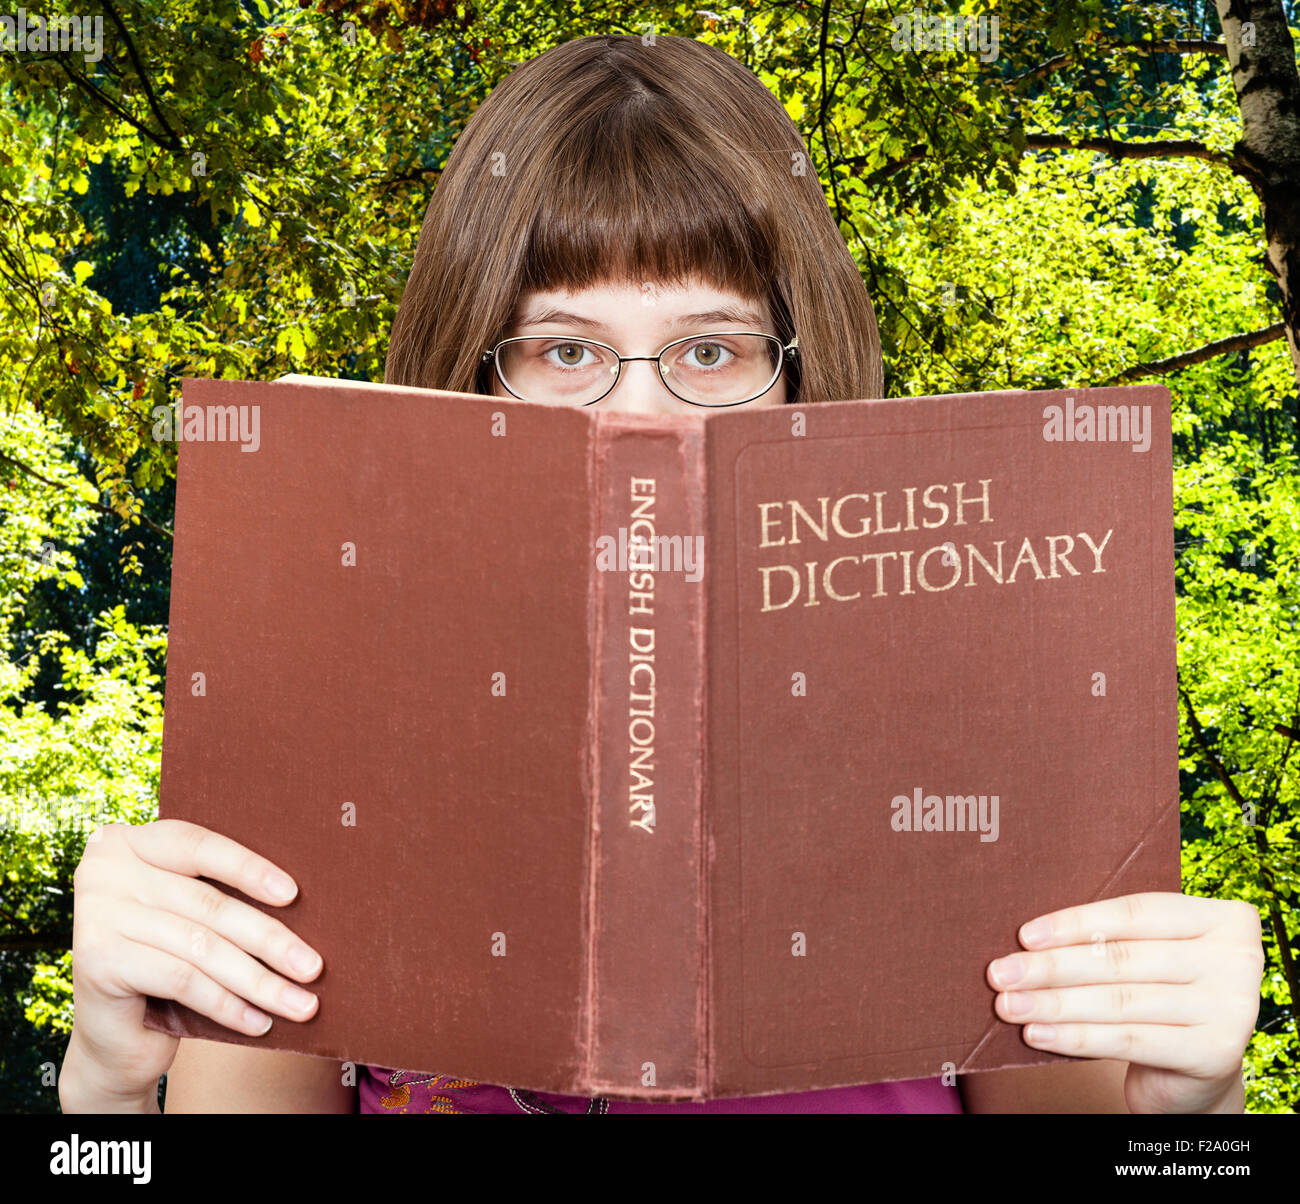 Fille avec des lunettes donne sur English Dictionary livre vert sur la forêt avec l'été l'arrière-plan Banque D'Images